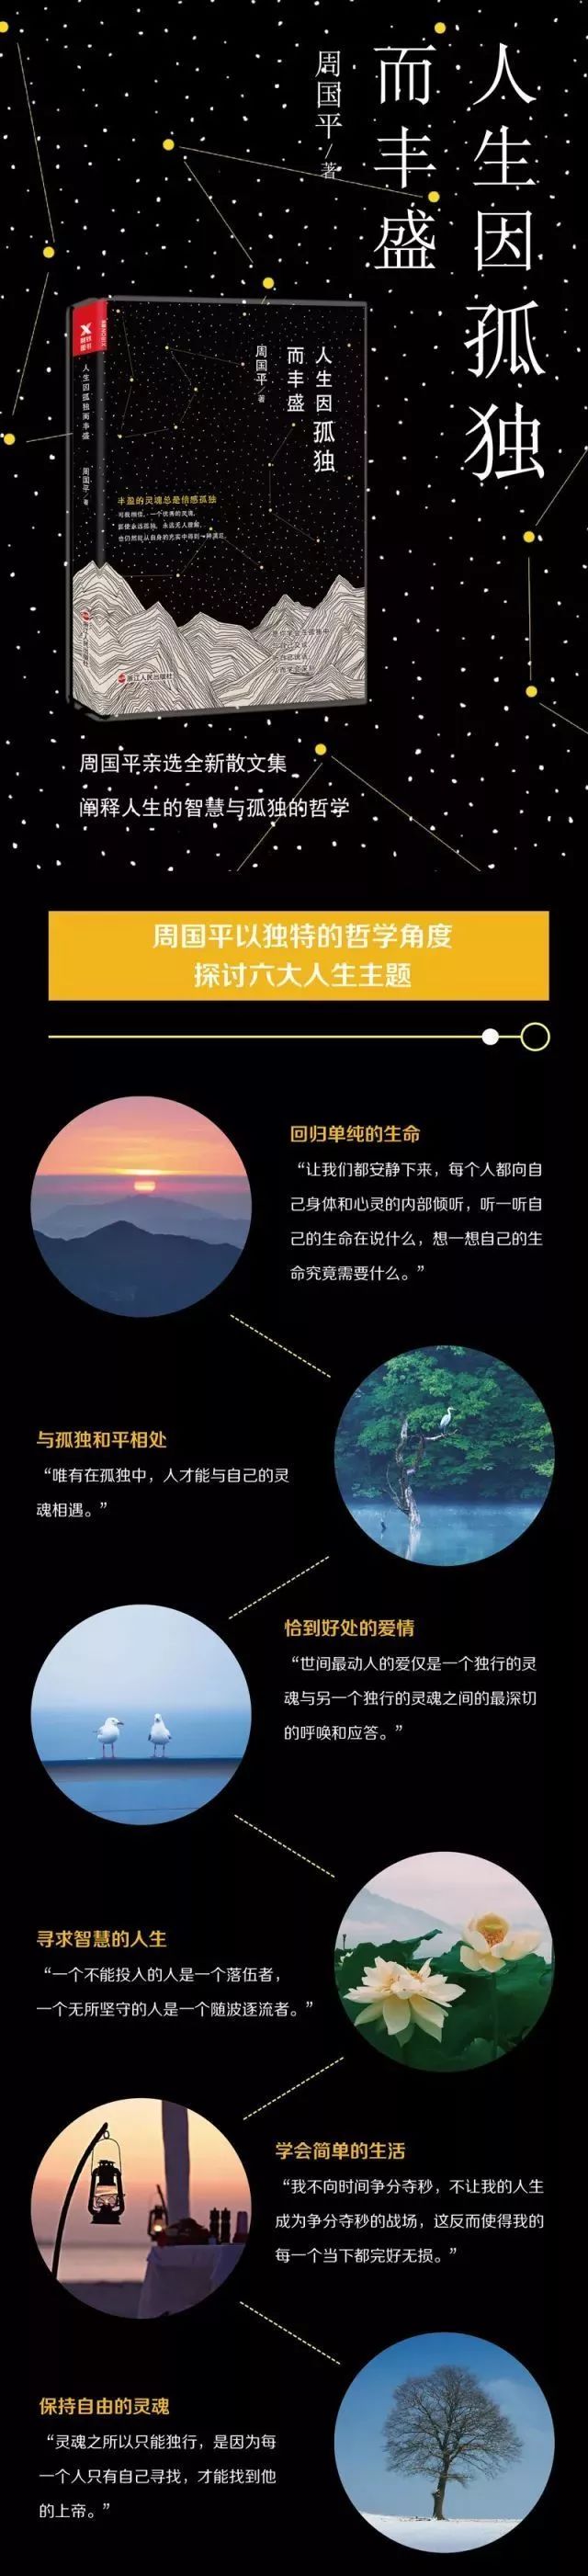 深圳书城读书论坛预告 听周国平的“阅读与人生”